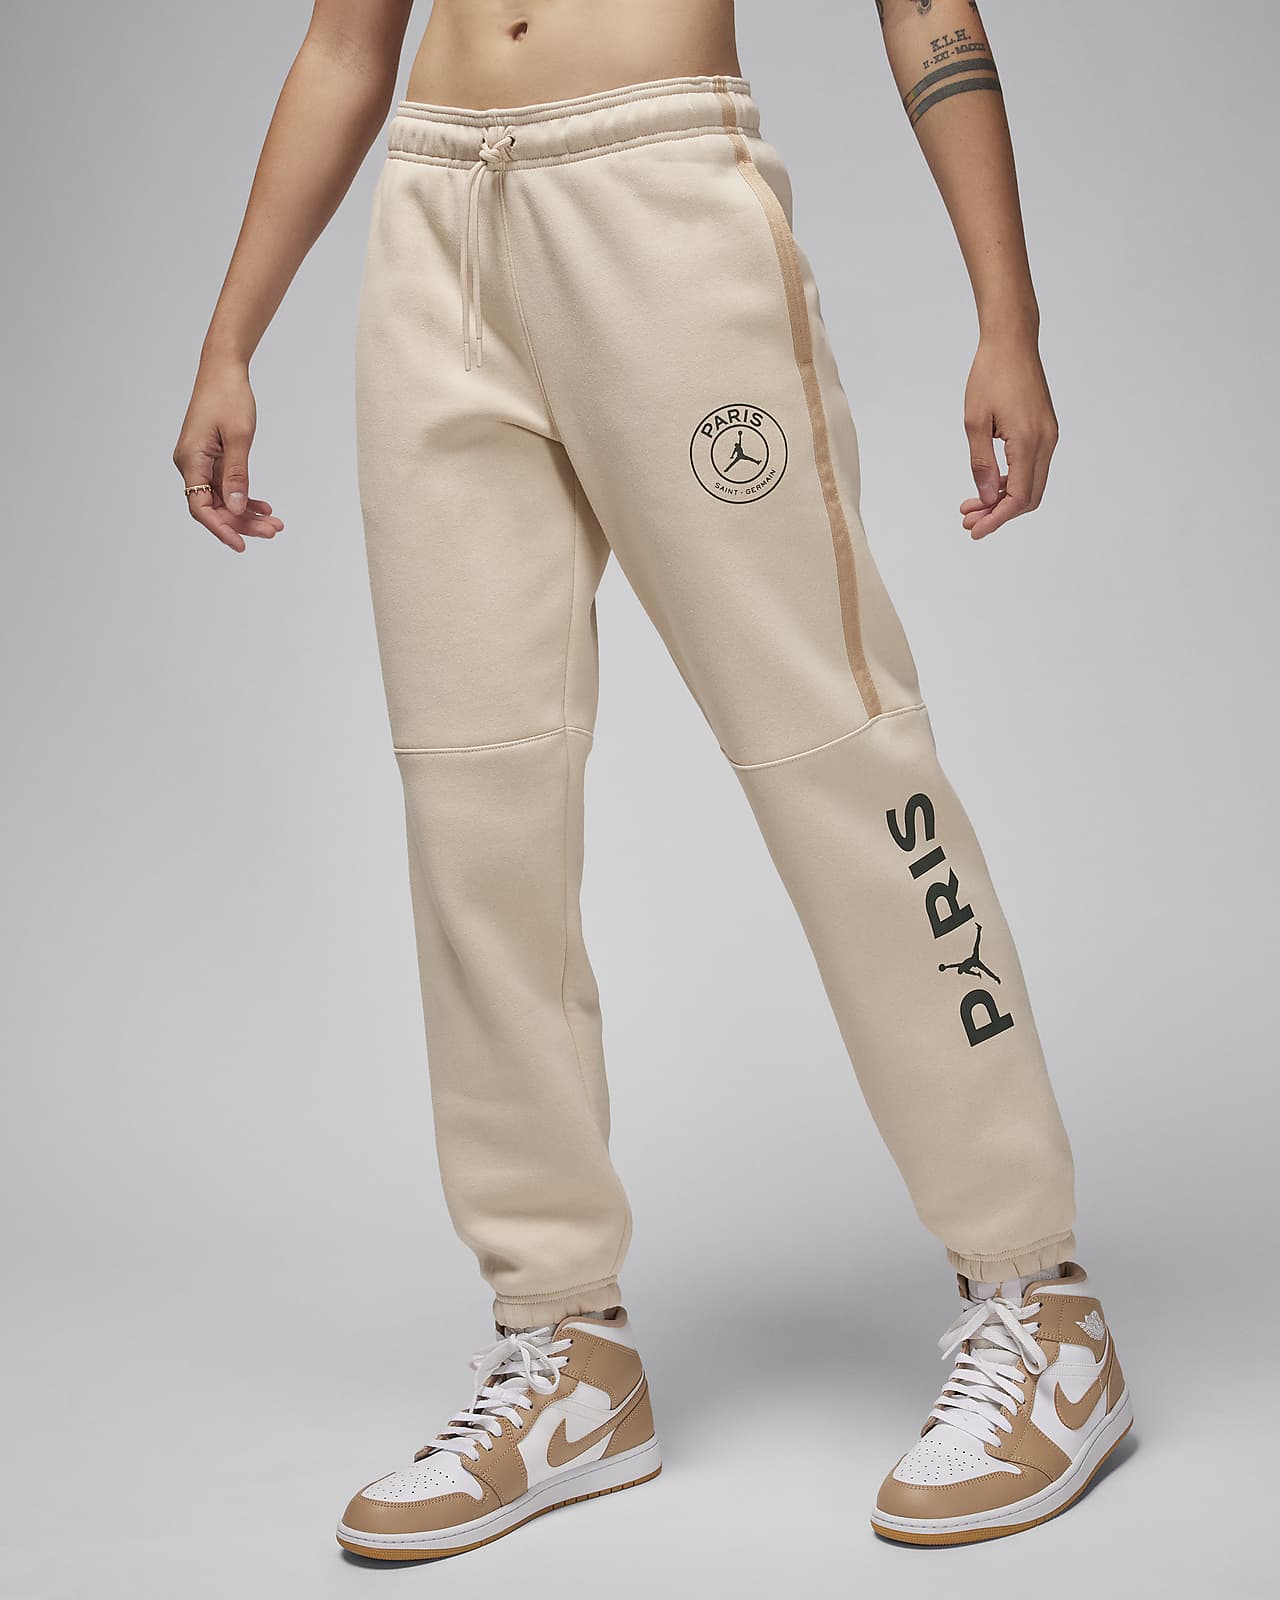 Γυναικείο ποδοσφαιρικό παντελόνι με σχέδιο Jordan Παρί Σεν Ζερμέν Brooklyn Fleece